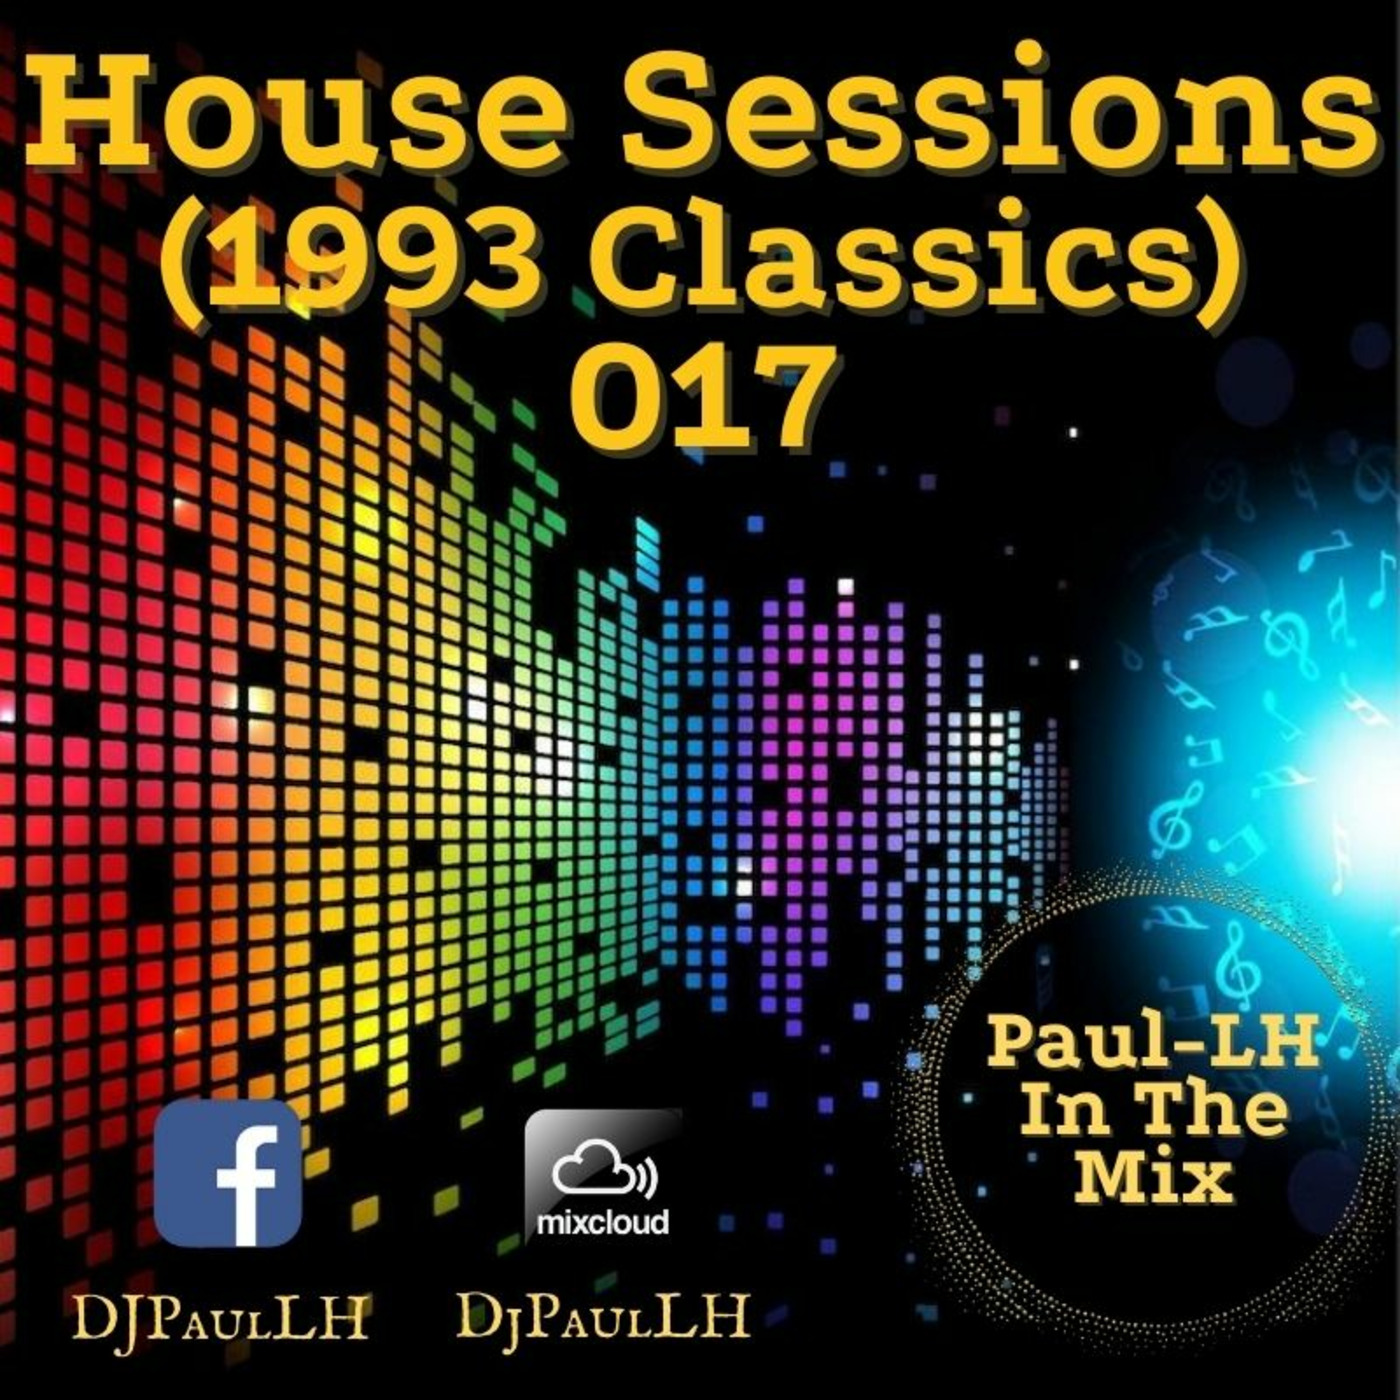 House (1993ish Classics) Sessions 017